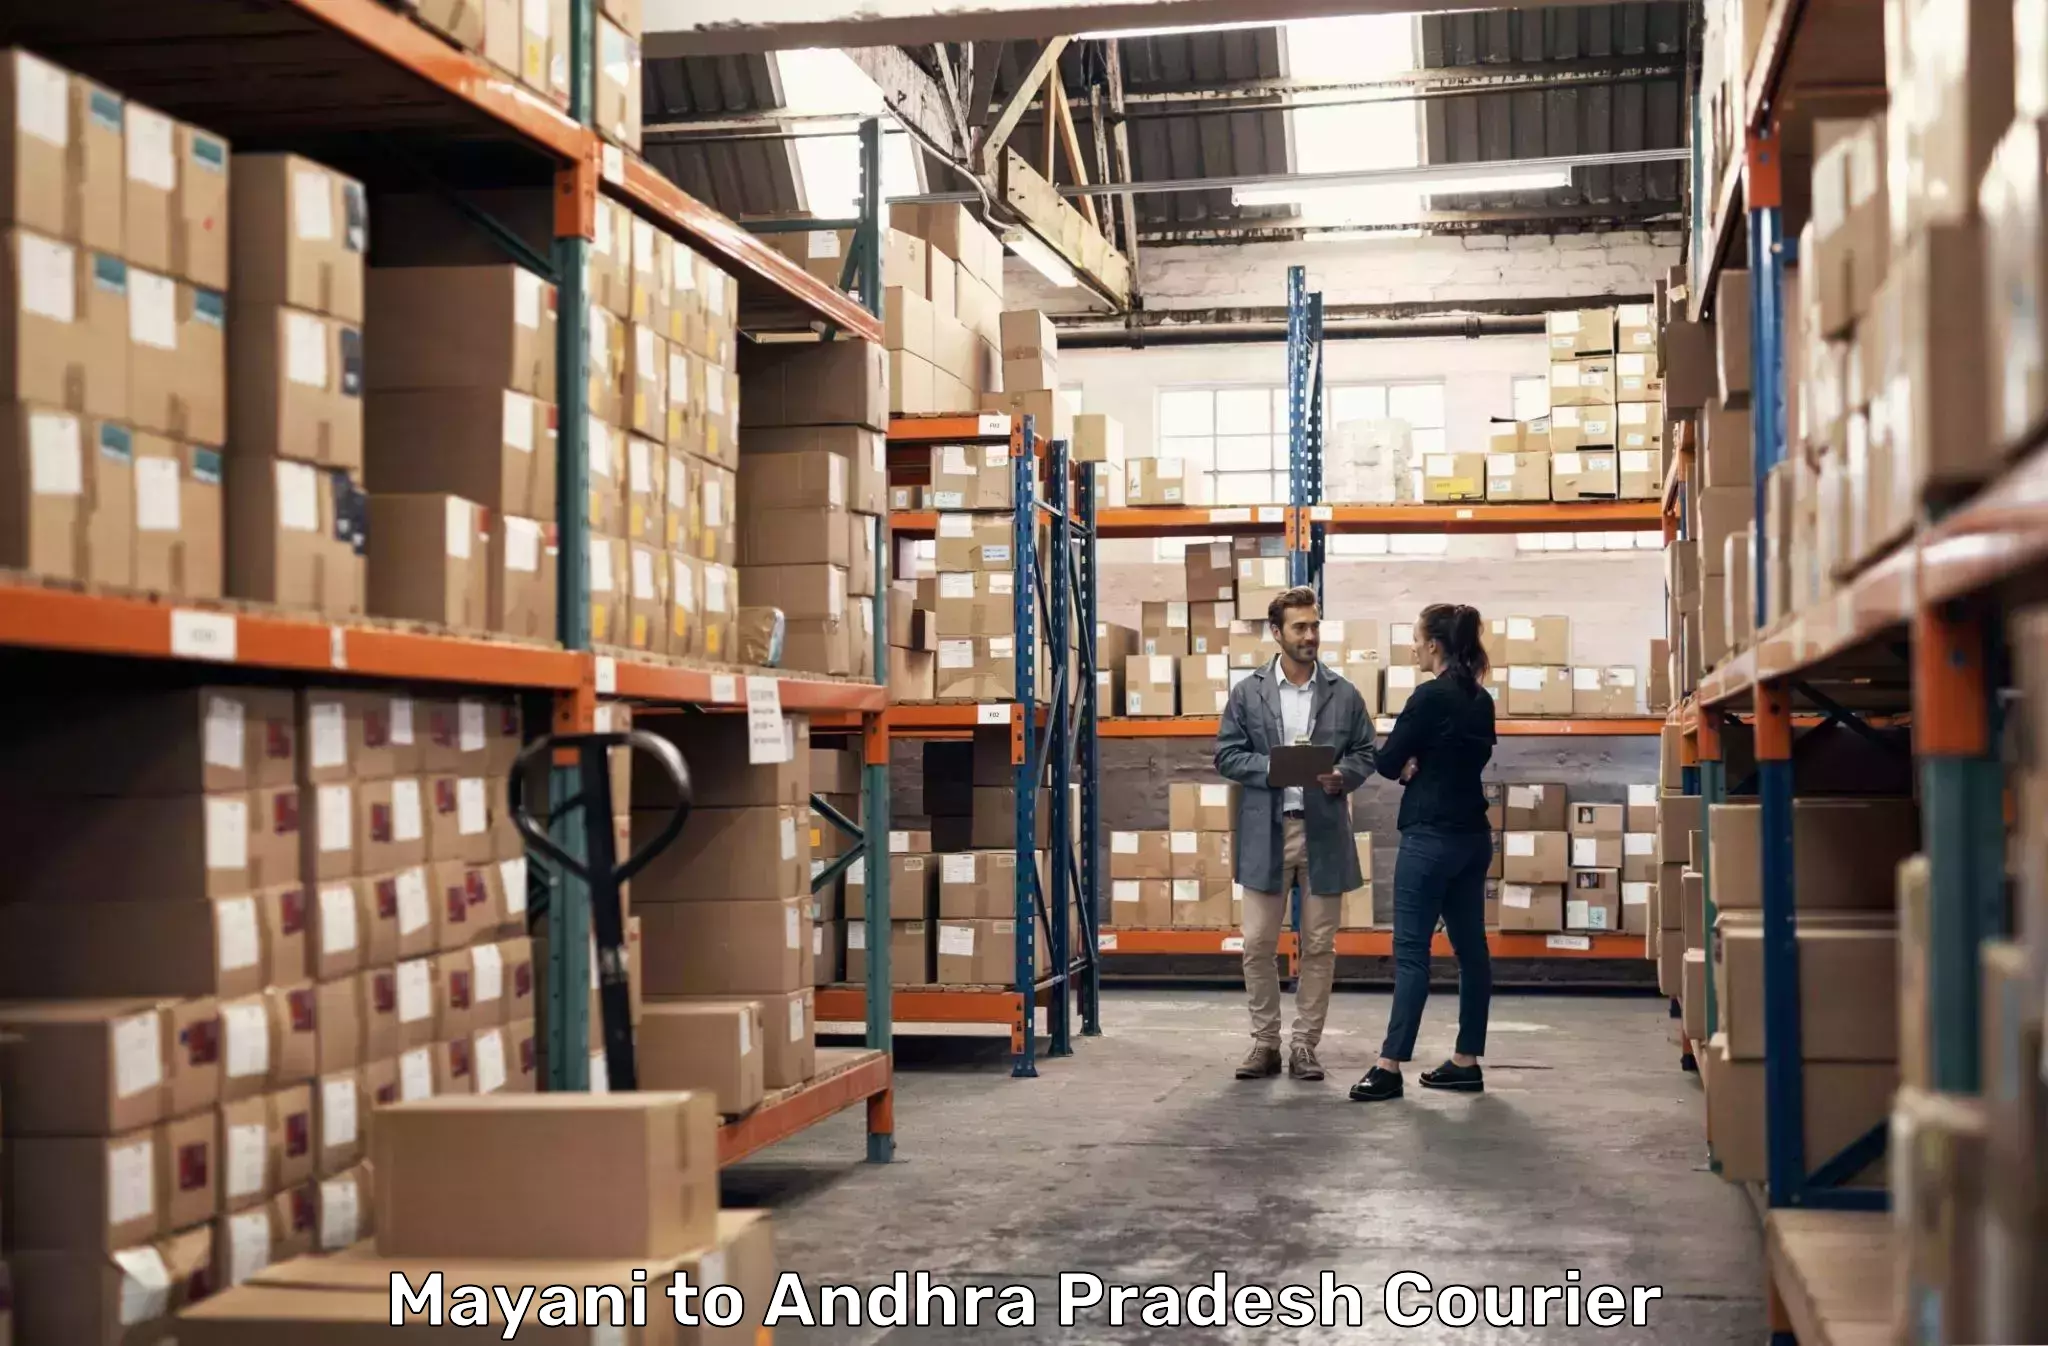 Logistics service provider Mayani to Akividu